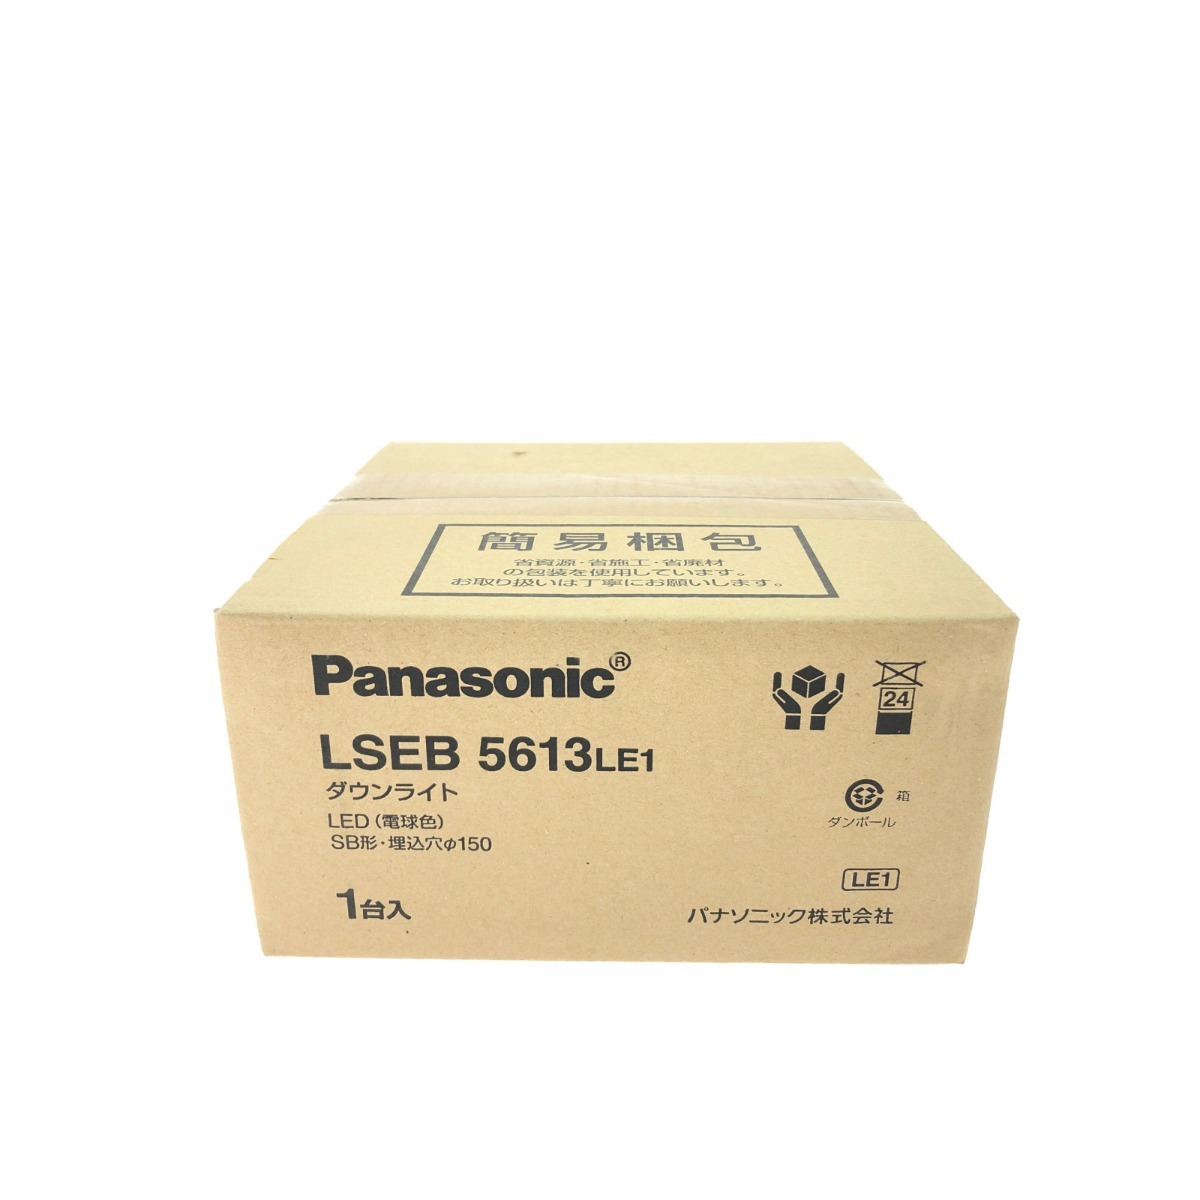 ▼▼ Panasonic パナソニック LED ダウンライト 電球色 SB形・天井埋込型 LSEB 5613LE1 未使用